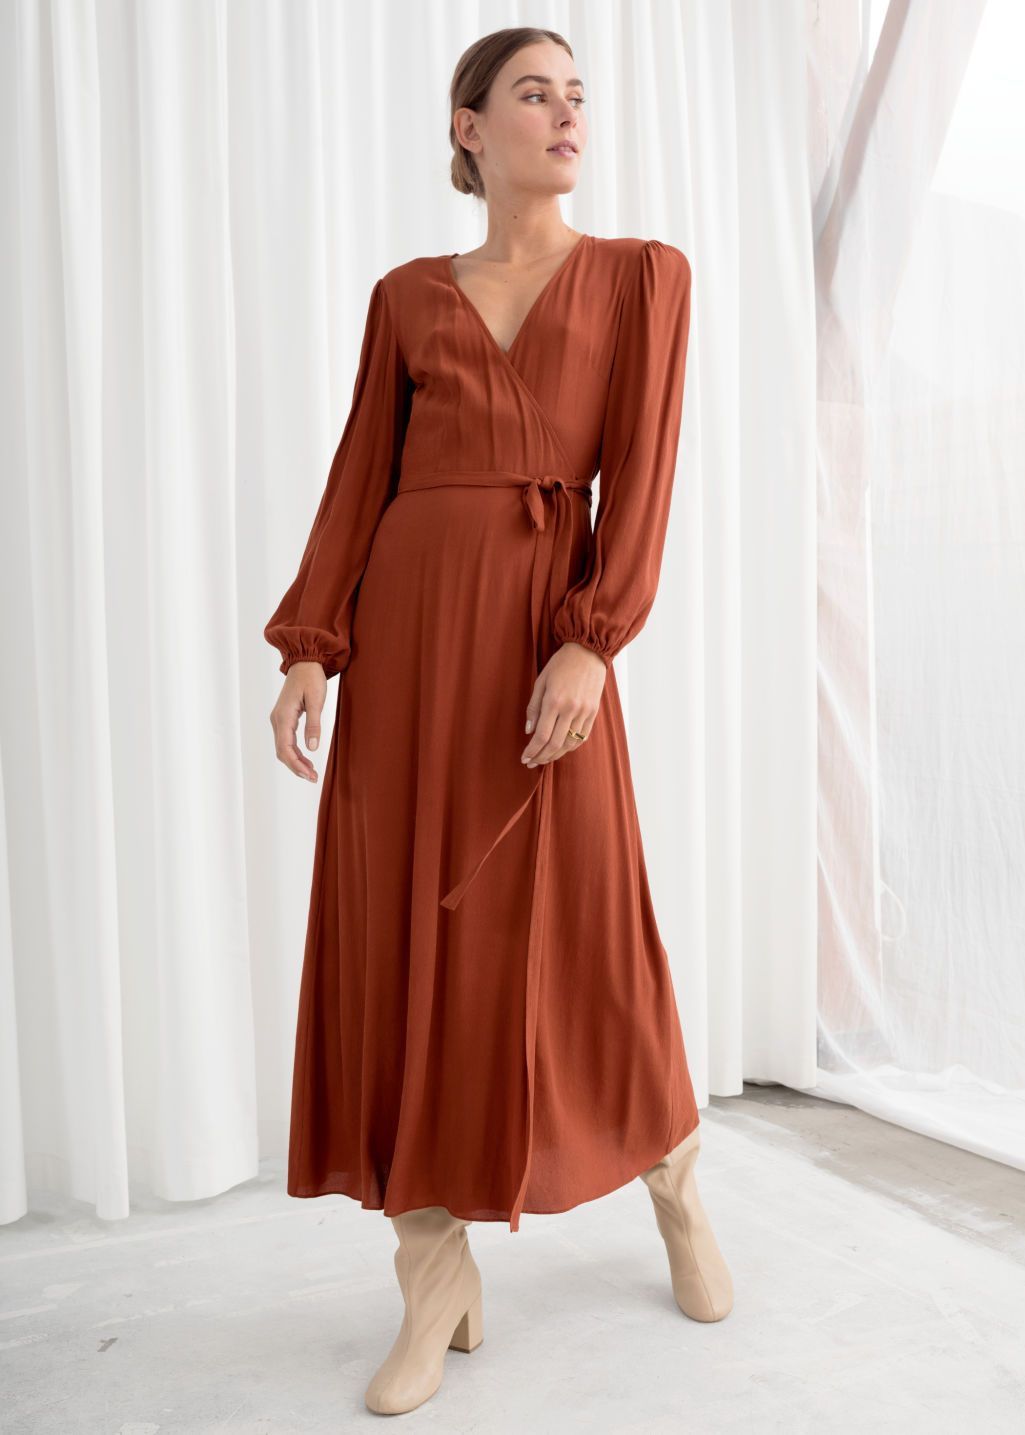 Wrap Midi Dress -   17 dress Midi formatura ideas